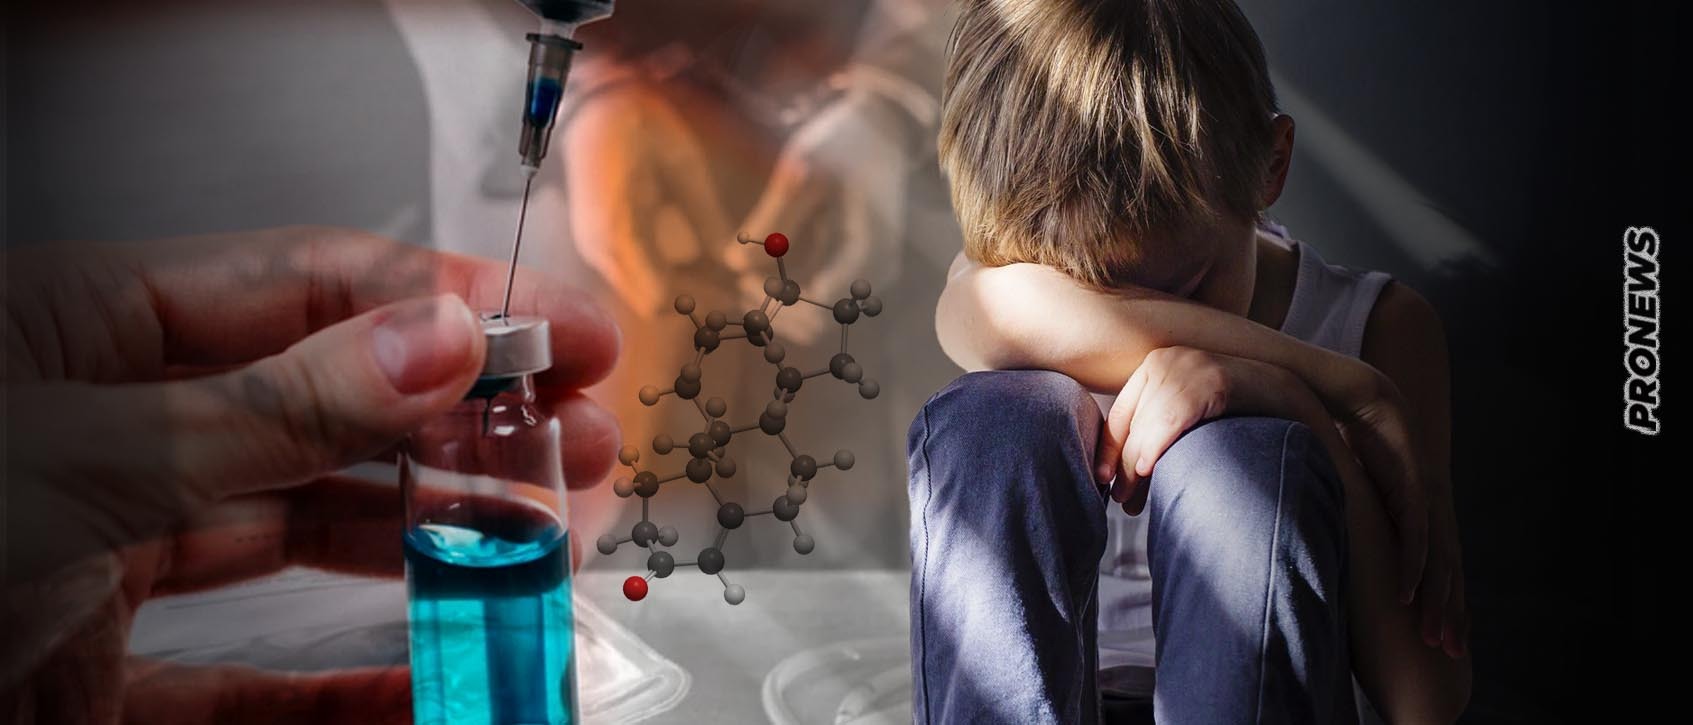 Δρακόντειο σχέδιο νόμου στη Ρωσία: Έρχεται χημικός ευνουχισμός για κάθε παιδοβιαστή